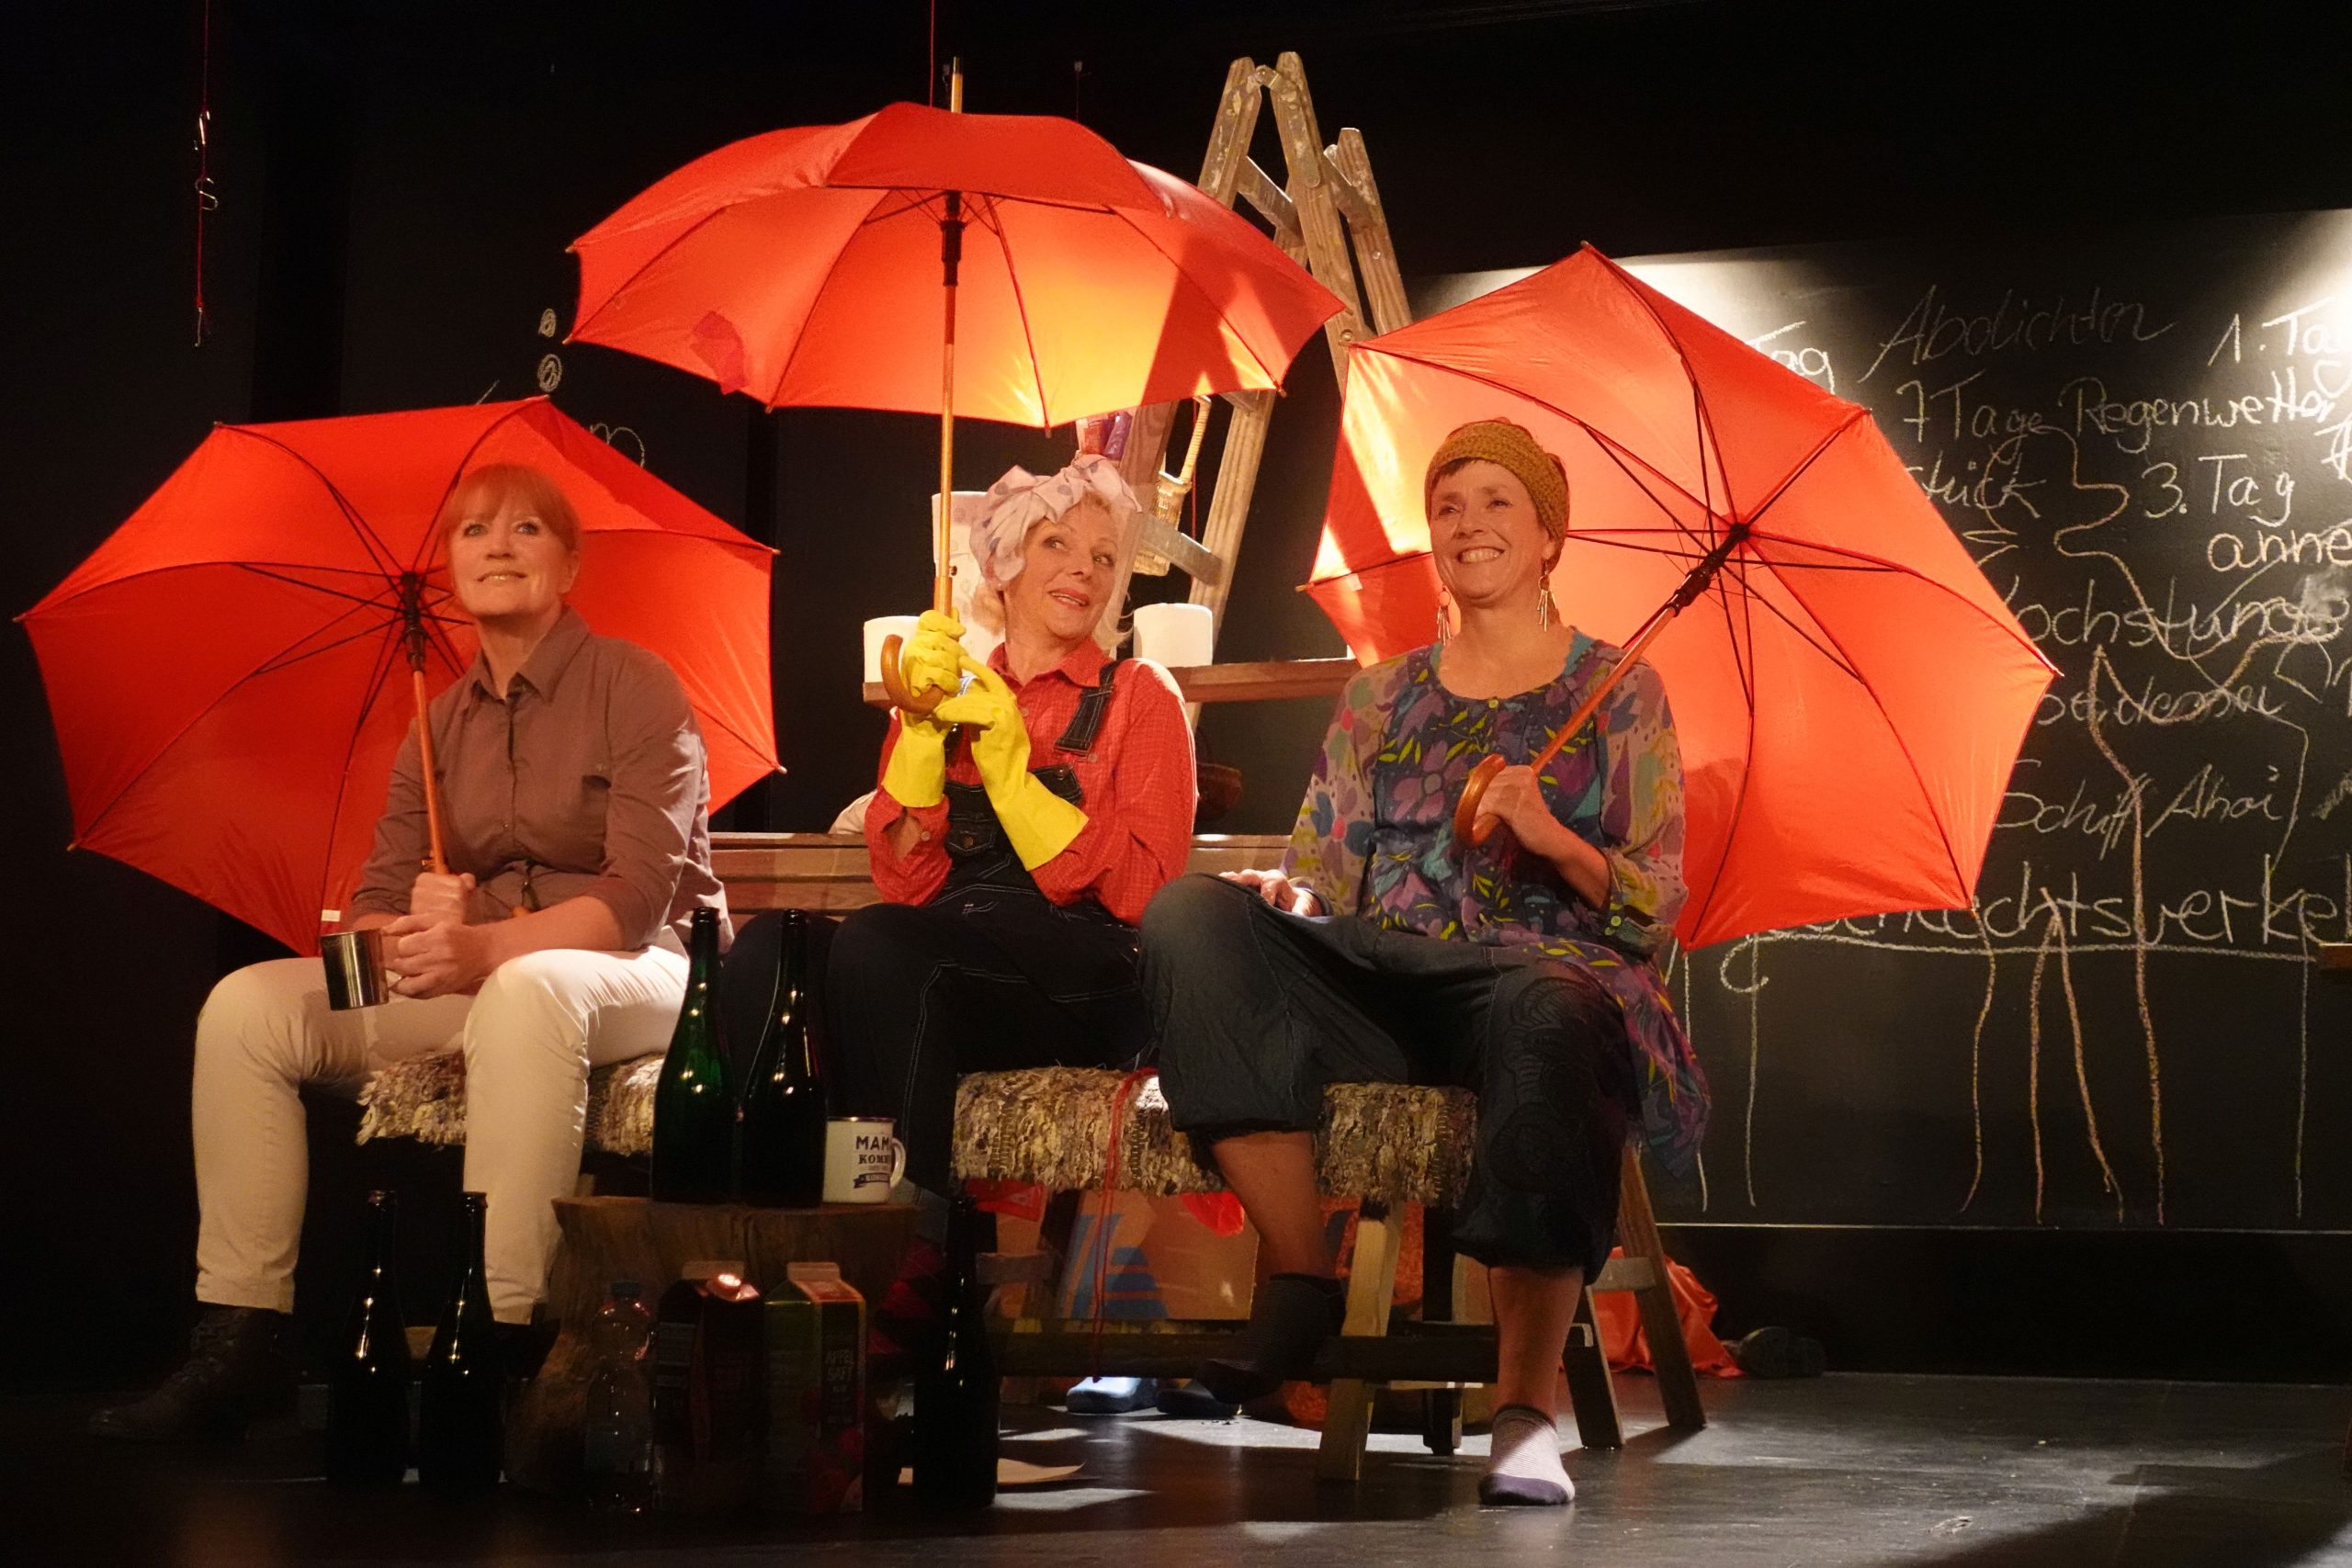 Die drei Schwestern auf der Bühne mit roten Regenschirmen